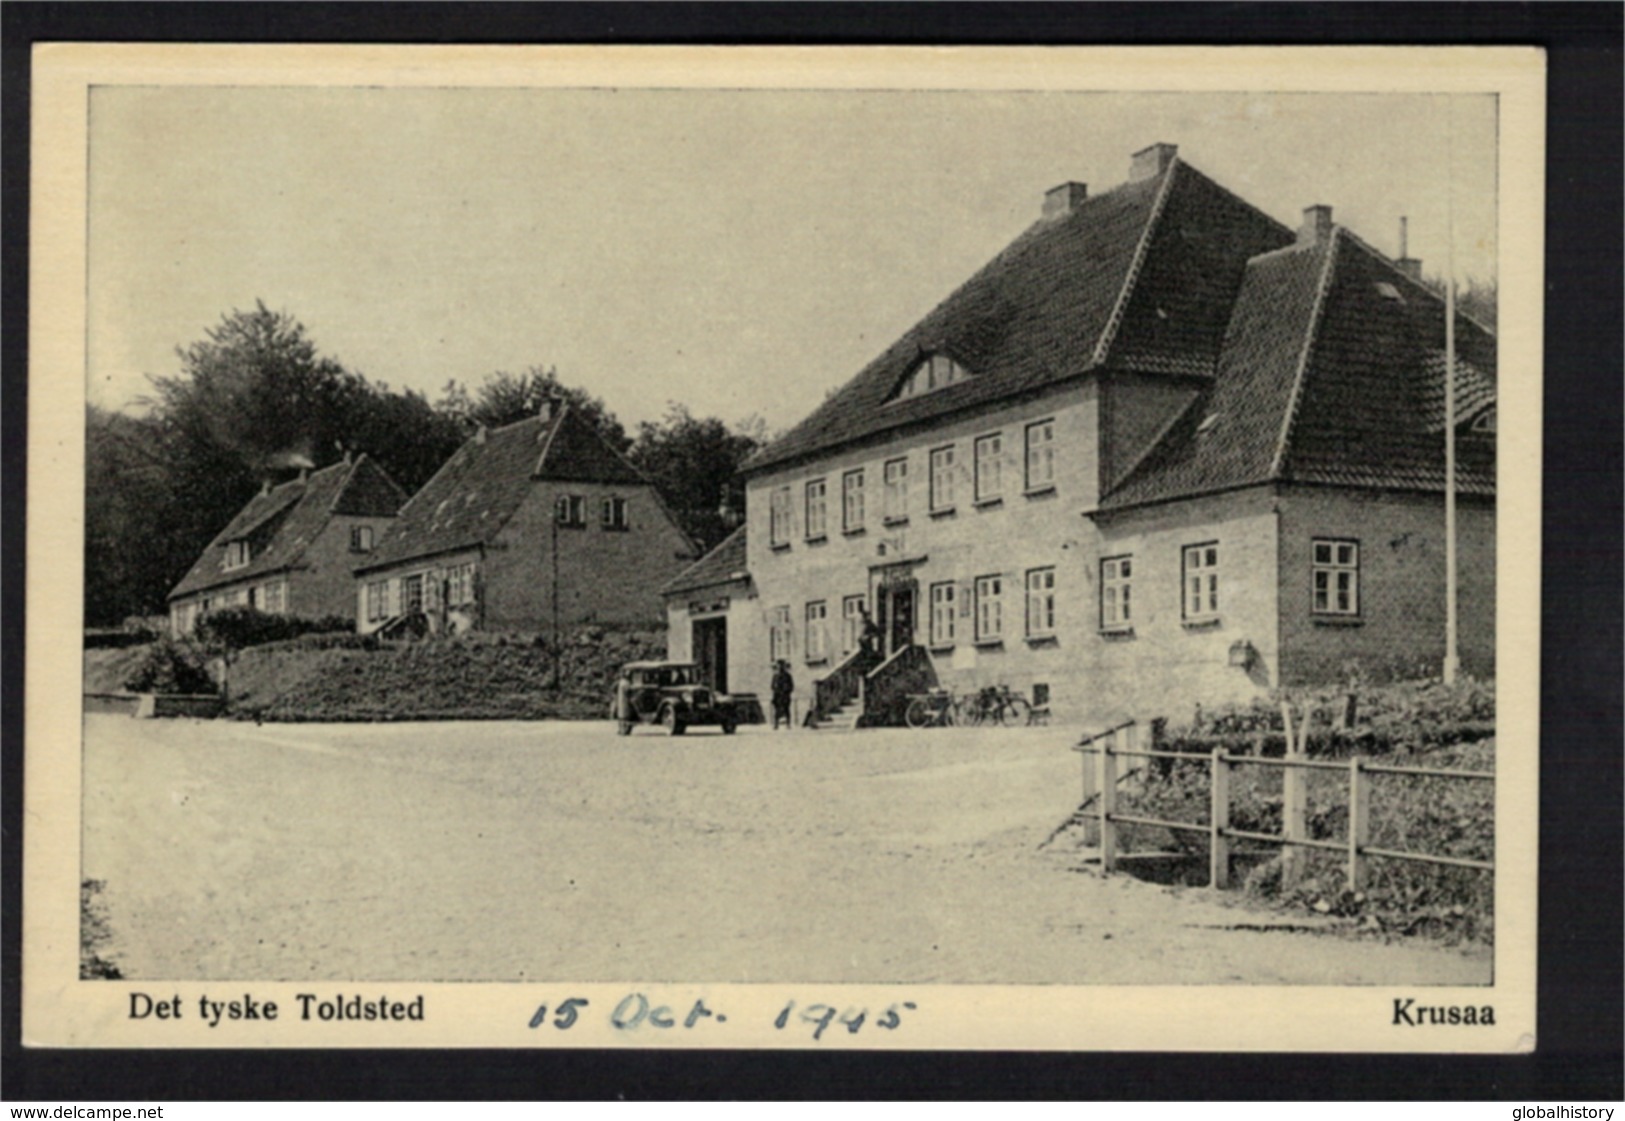 DG1022 - DENMARK - DET TYSKE TOLDSTED, OKTOBER 1945 - Danemark